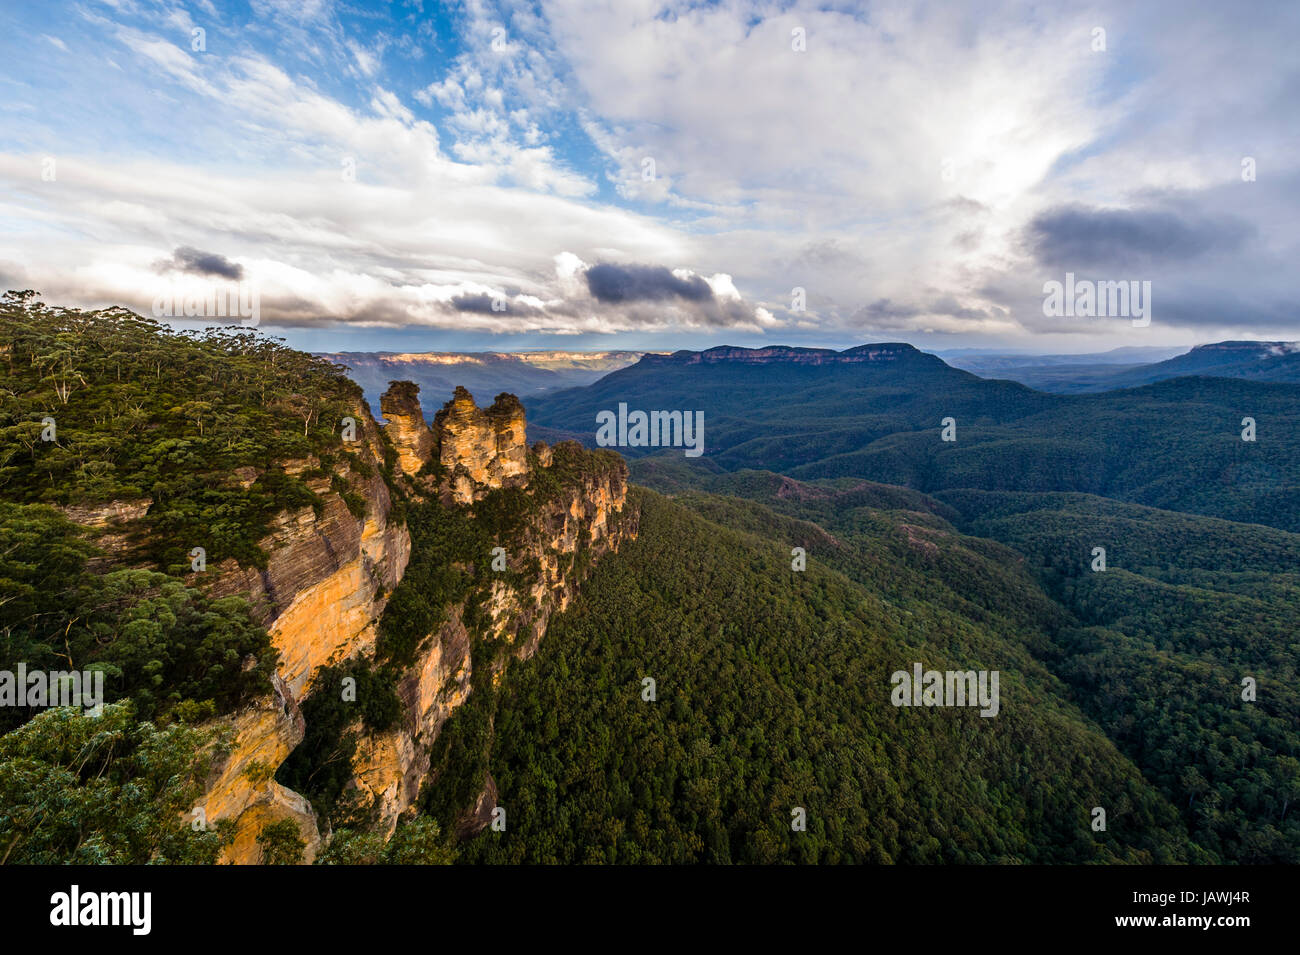 Las tres hermanas es una formación de roca arenisca con vistas a un valle densamente forestada. Foto de stock